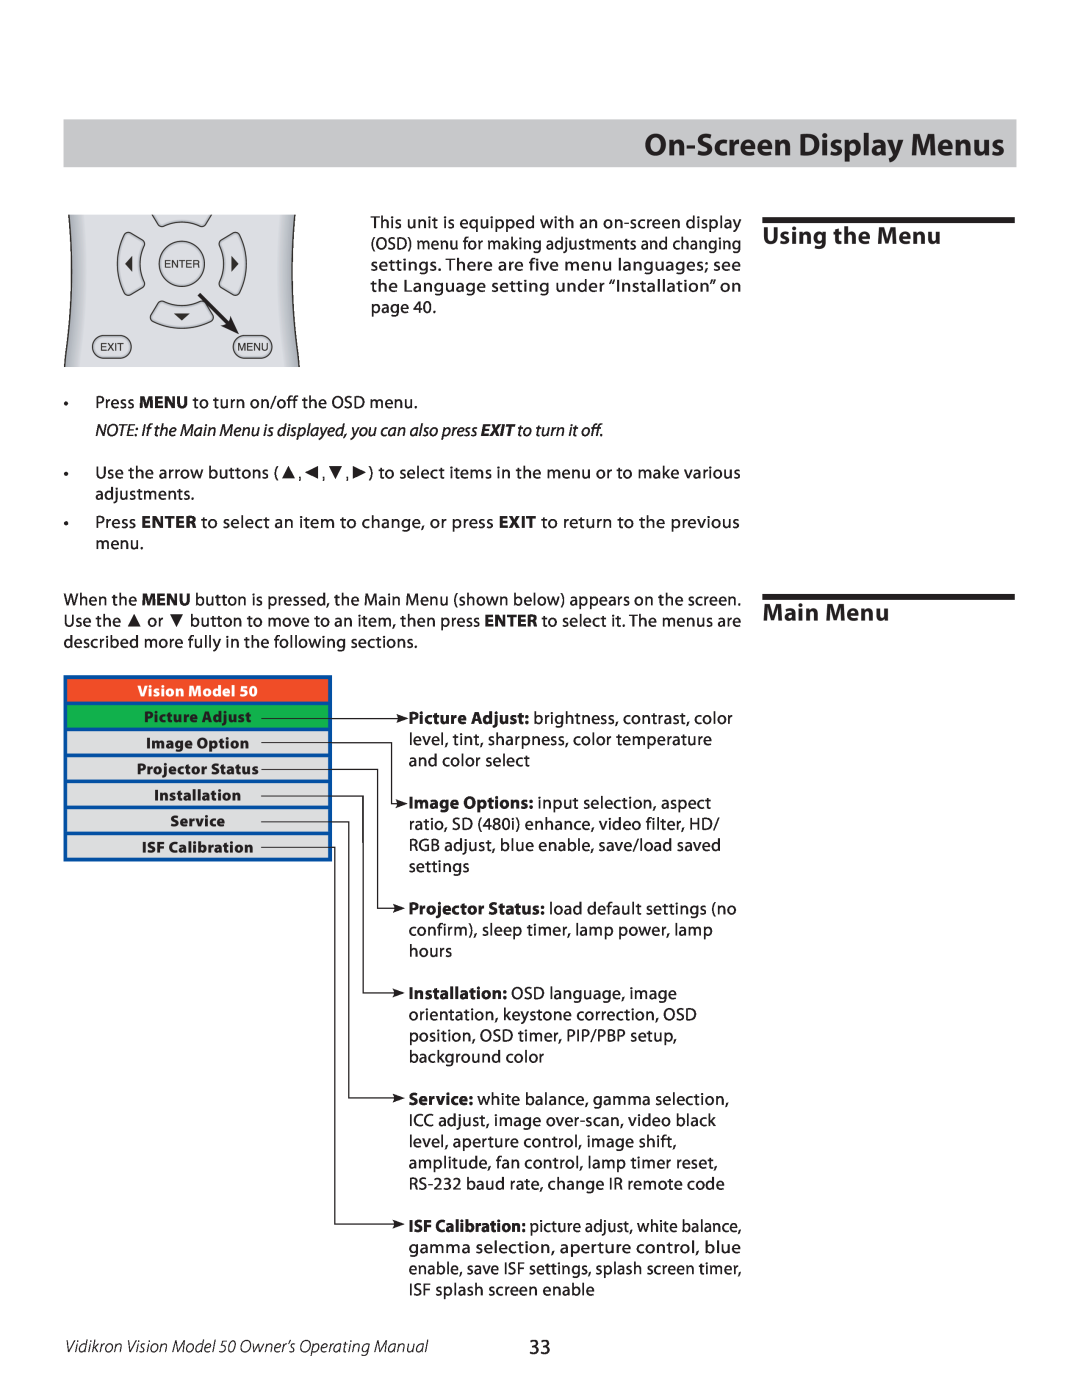 Vidikron manual On-Screen Display Menus, Vidikron Vision Model 50 Owner’s Operating Manual 